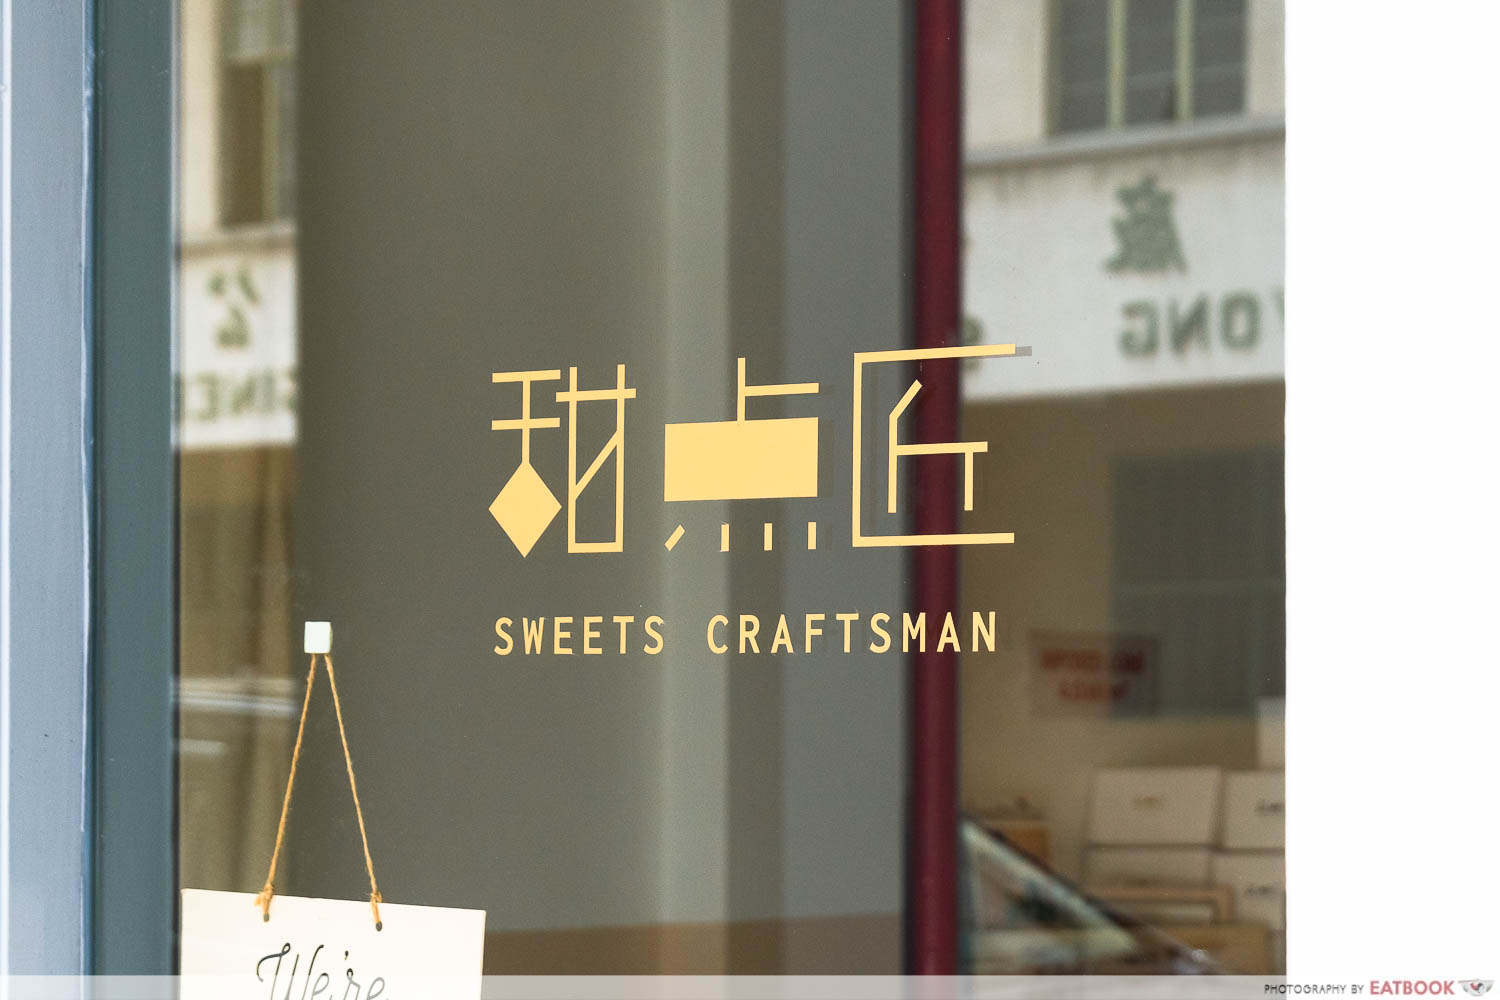 sweets craftsman logo